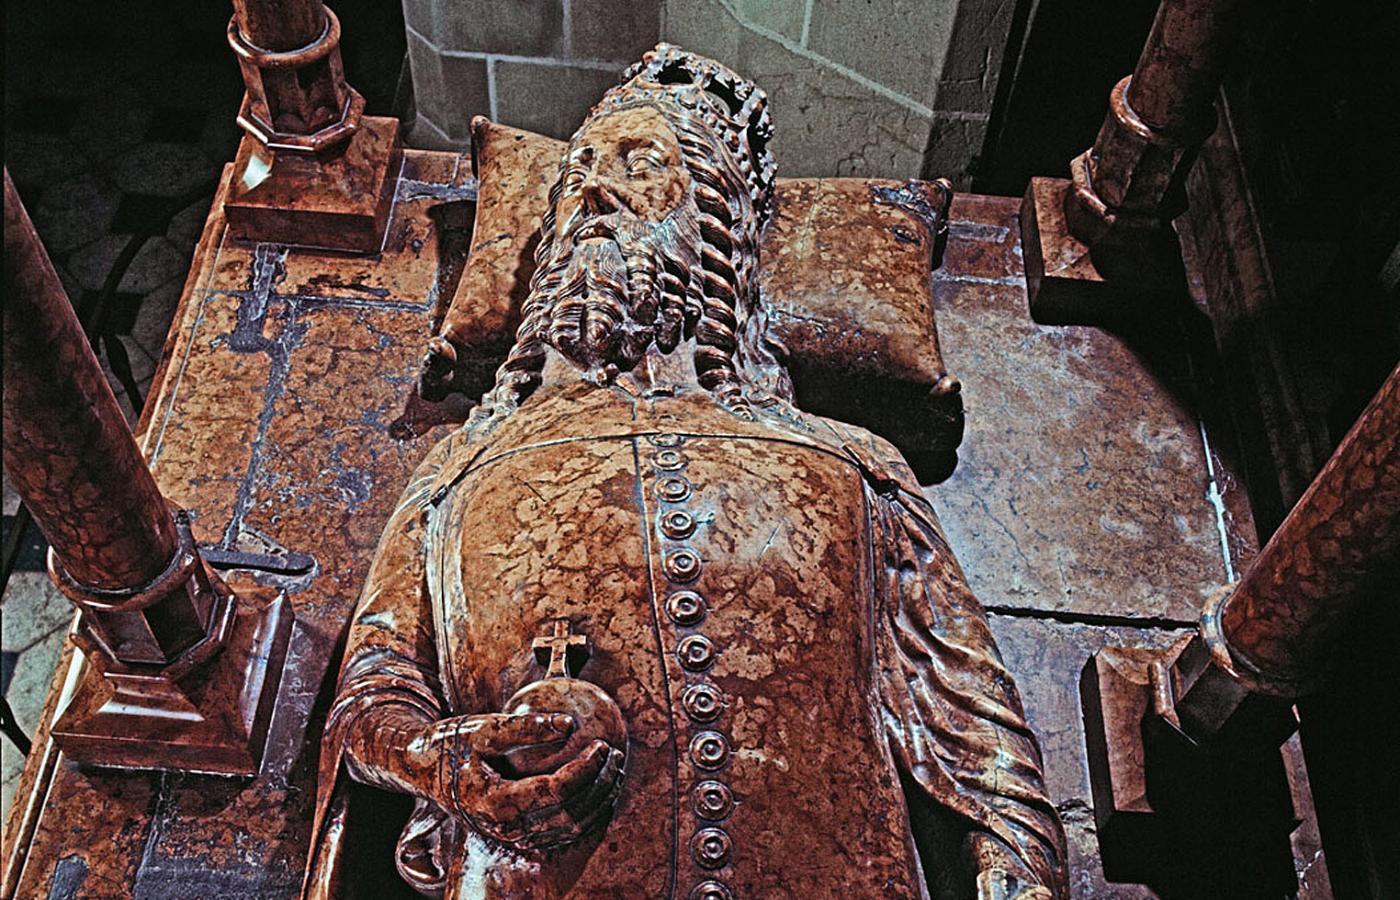 Wizerunek Kazimierza Wielkiego z jego nagrobka w bazylice archikatedralnej św. Stanisława i św. Wacława na Wawelu w Krakowie. Z insygniów zachowało się jabłko zwieńczone krzyżem, berło uległo uszkodzeniu.